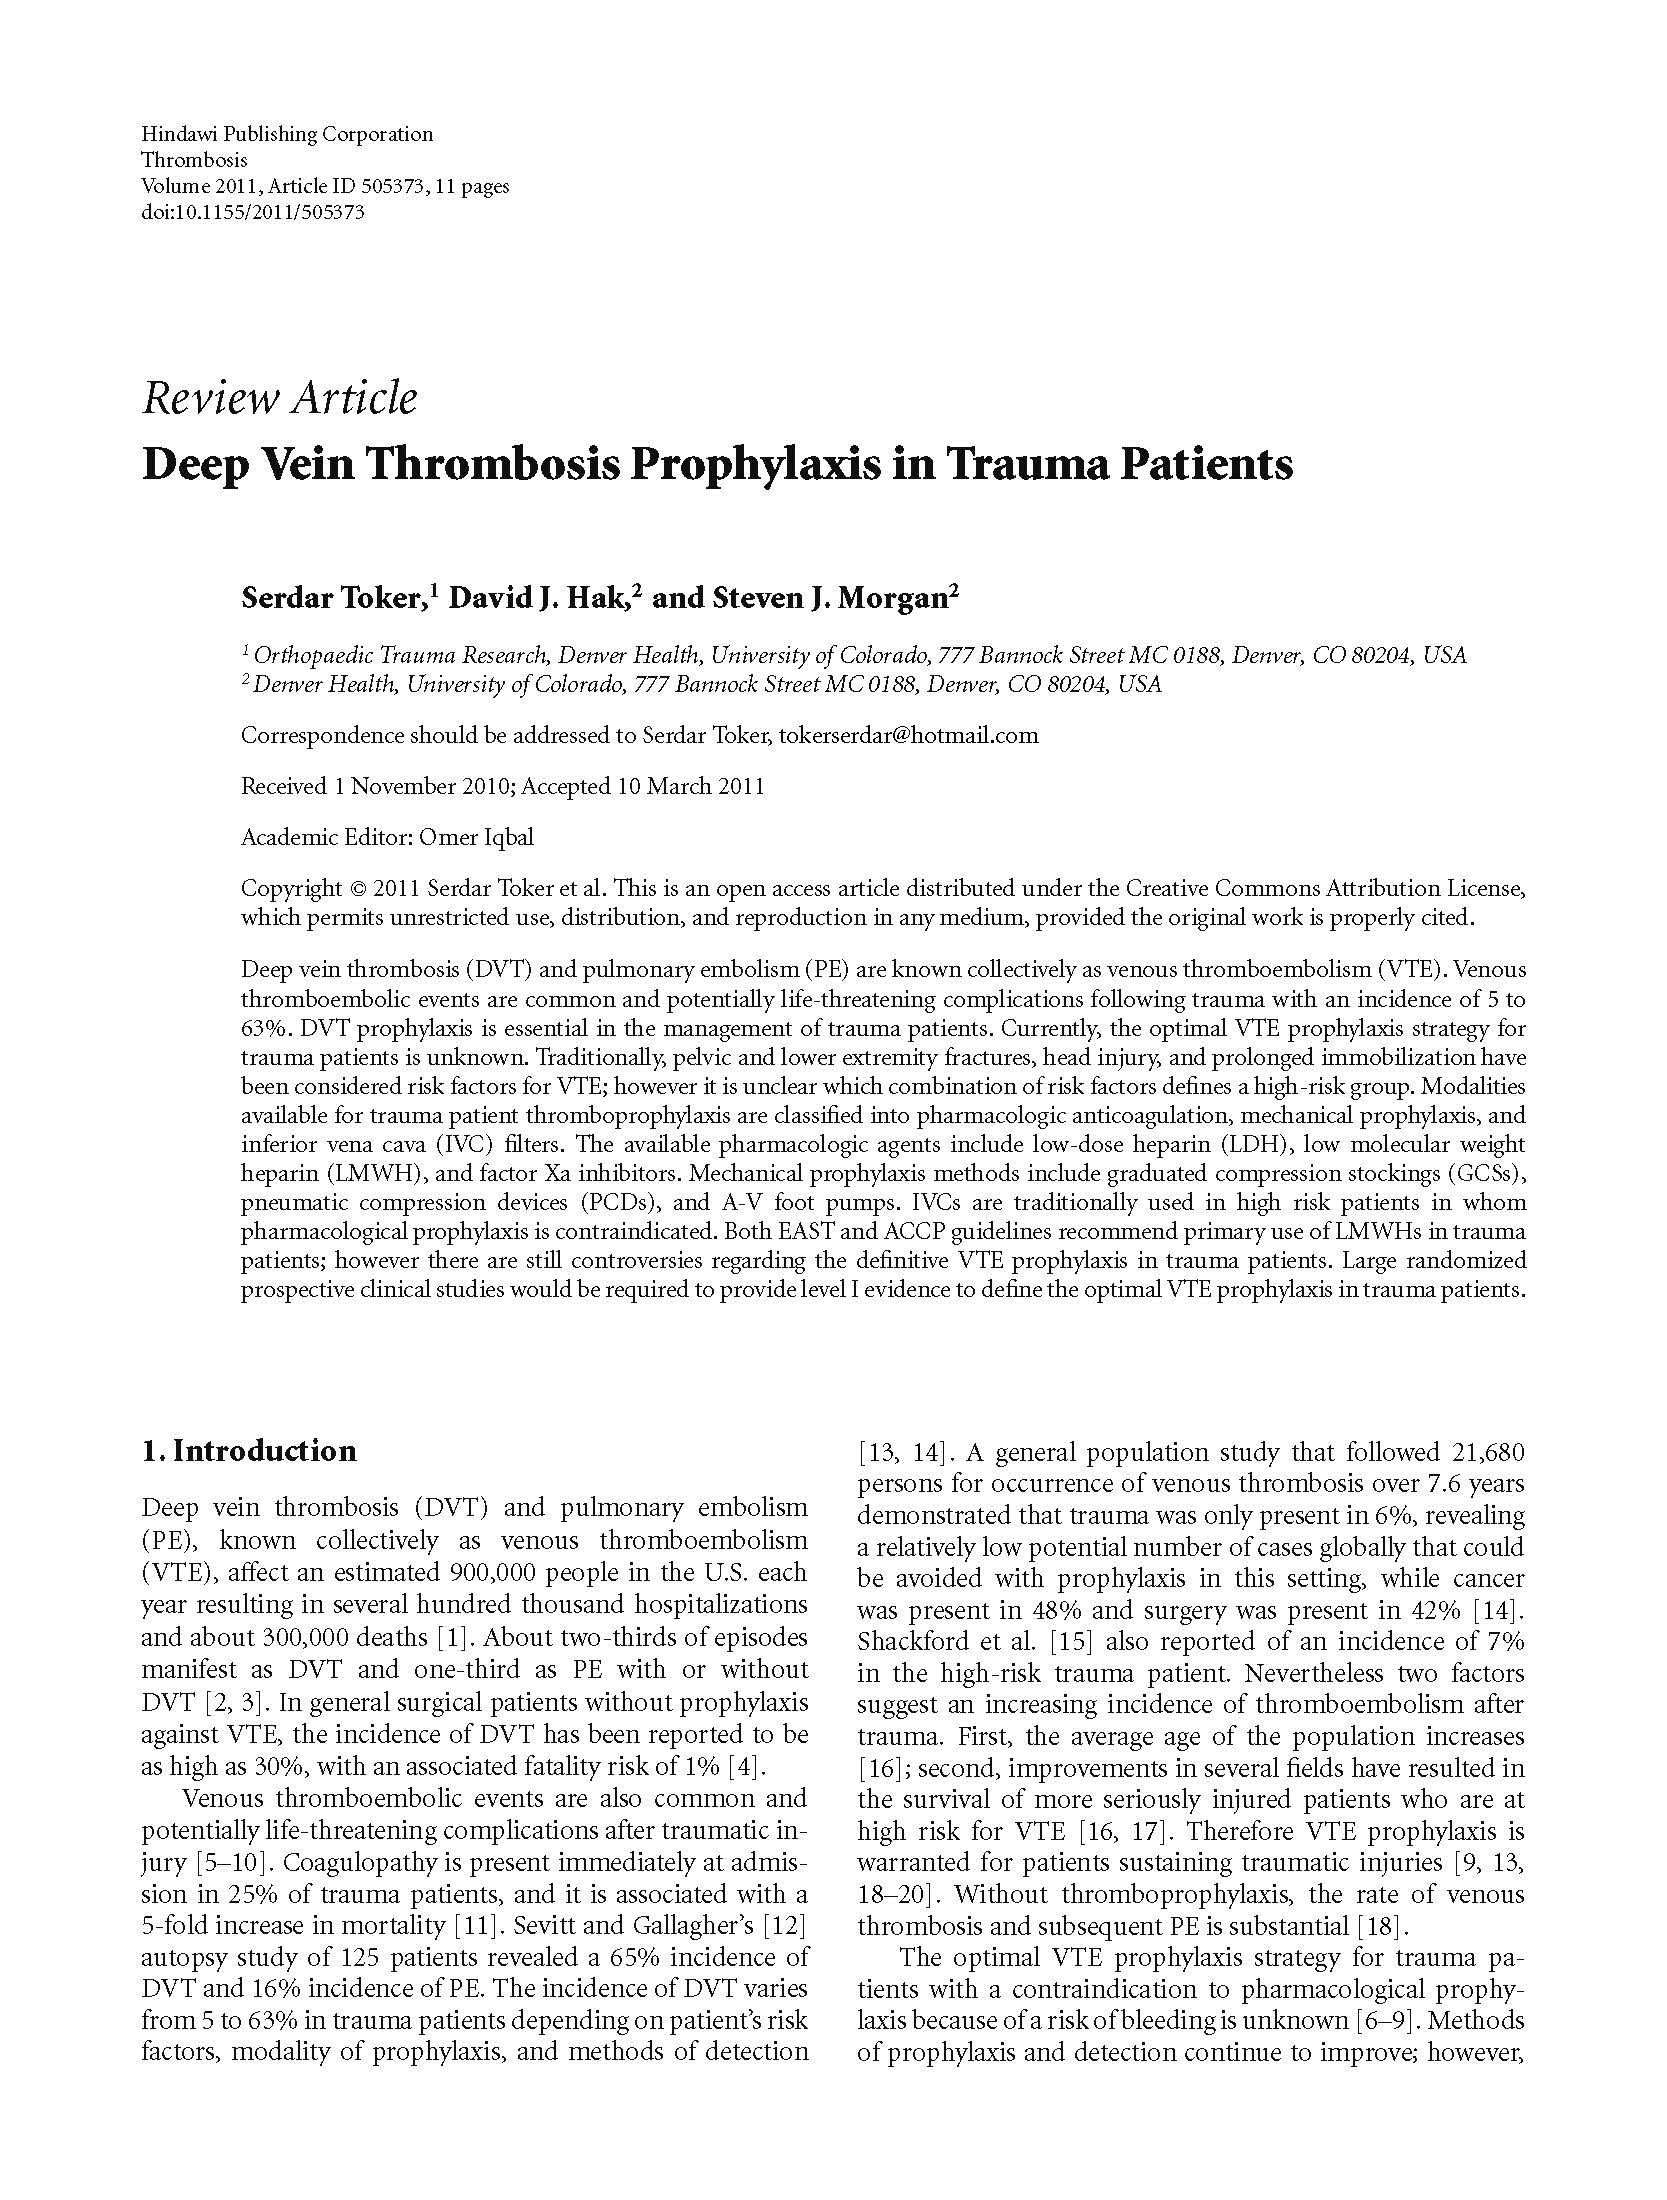 DVT Prophylaxis in Trauma ...(图1)